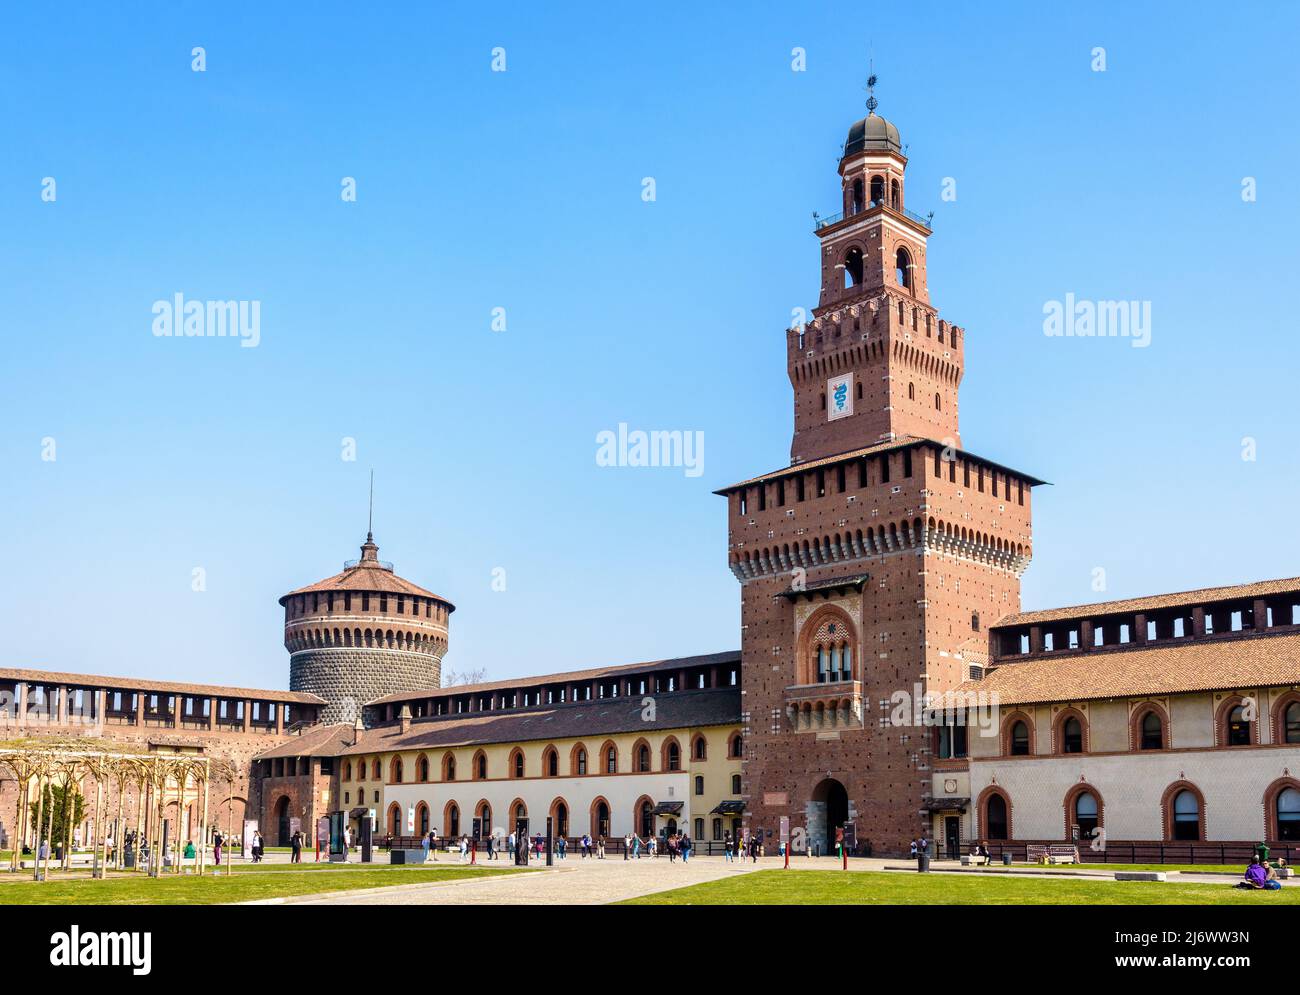 La Torre del Filarete, la torre principal del Castello Sforzesco (Castillo Sforza) en Milán, Italia, vista desde el patio exterior en un día soleado. Foto de stock